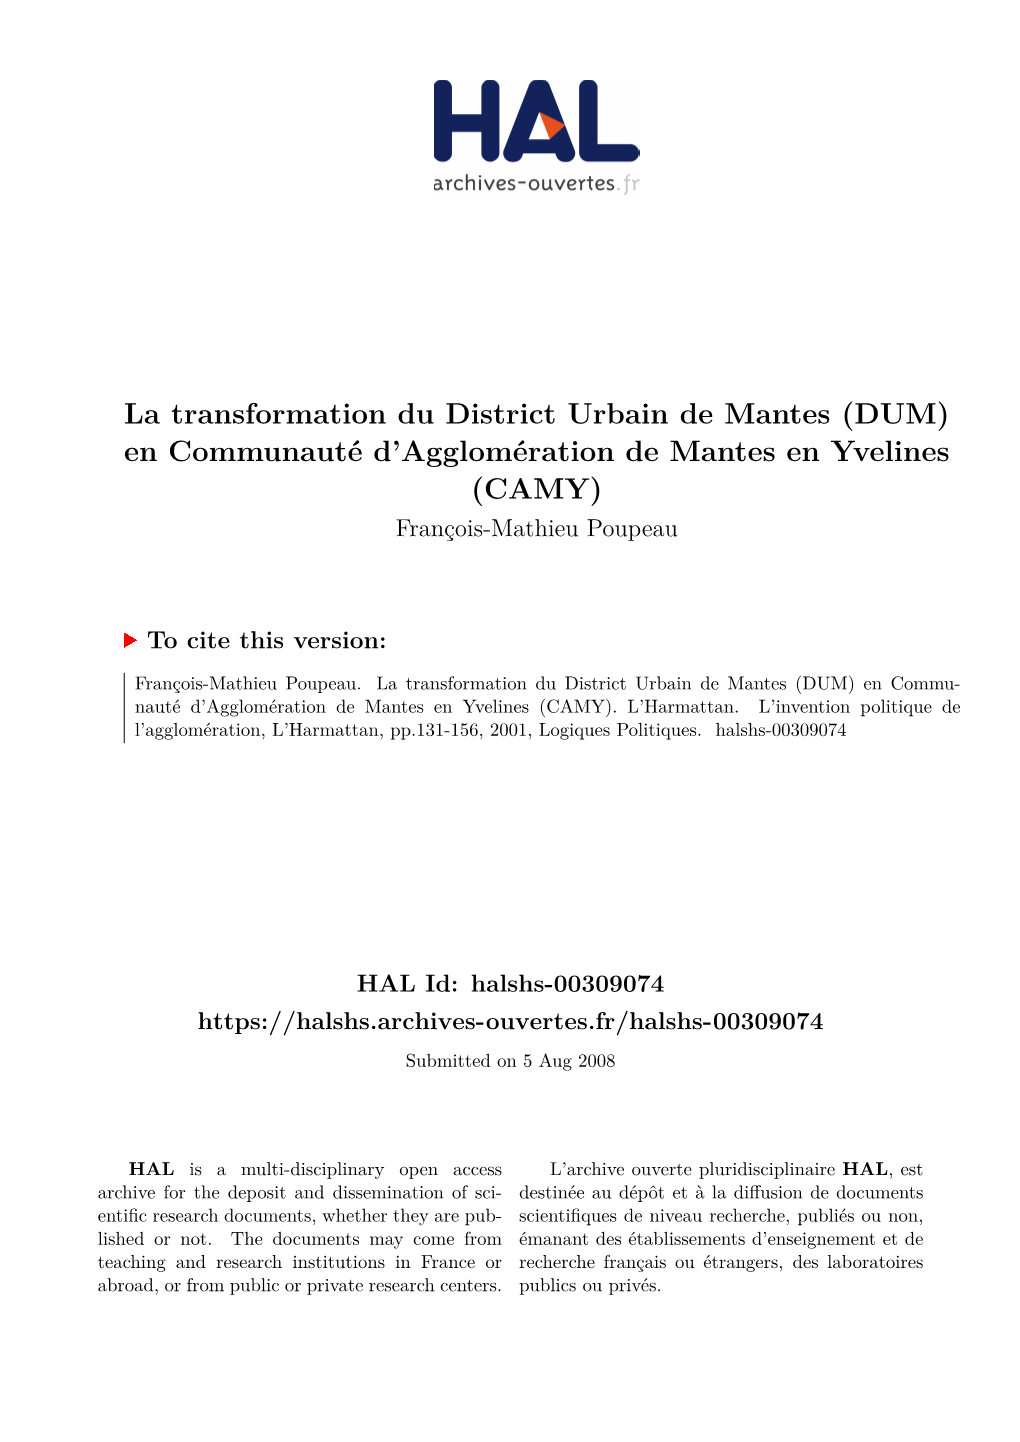 La Transformation Du District Urbain De Mantes (DUM) En Communauté D’Agglomération De Mantes En Yvelines (CAMY) François-Mathieu Poupeau